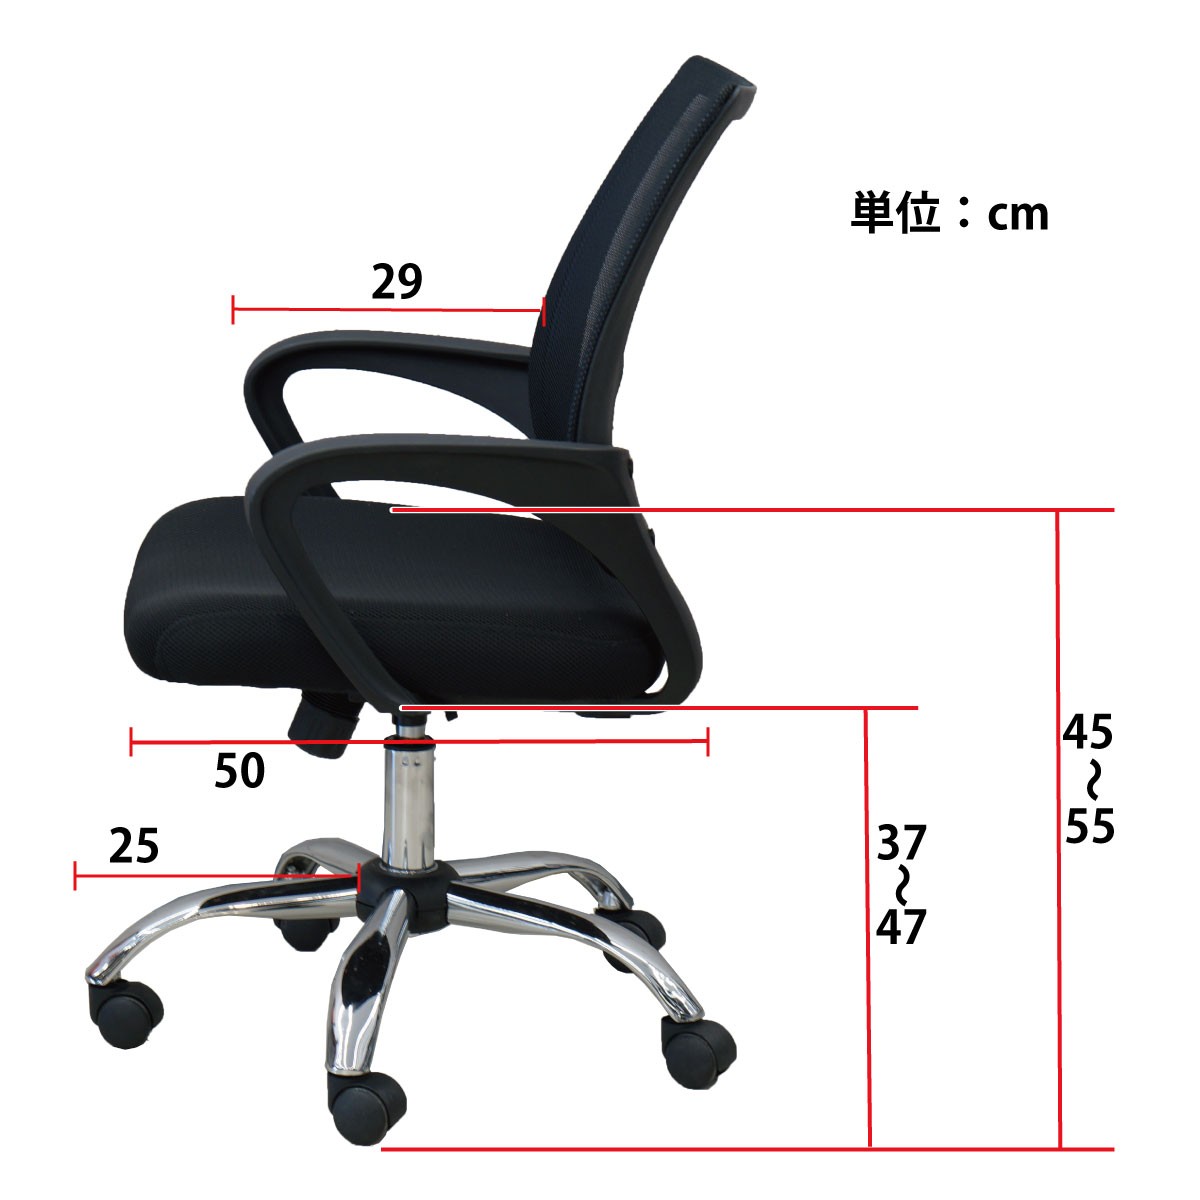  full automation mah-jong table MJ-REVO series optimum lift chair 4 legs set mah-jong chair 